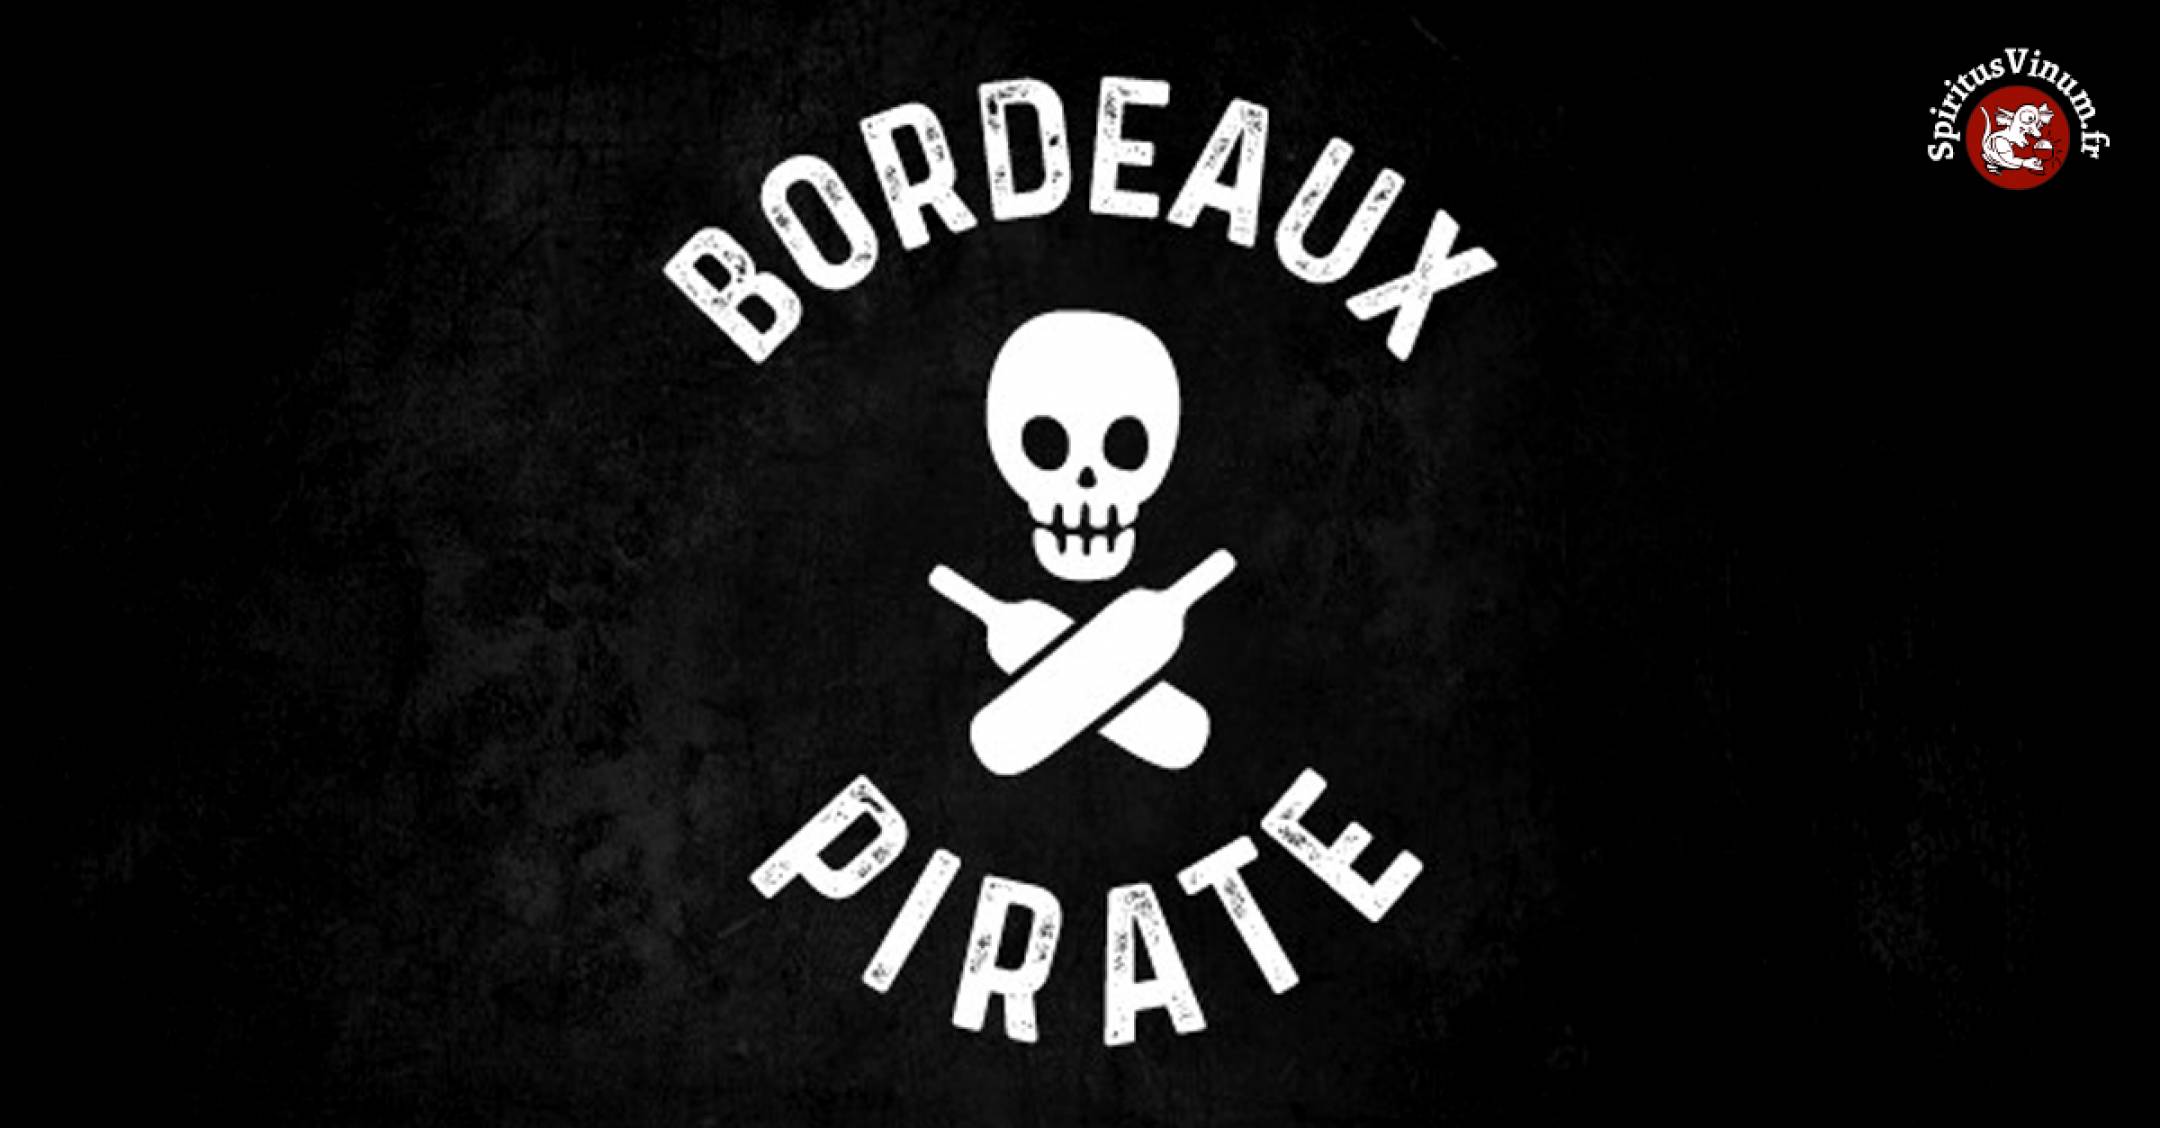 Mille sabords ! Des pirates à l’abordage des vins de Bordeaux